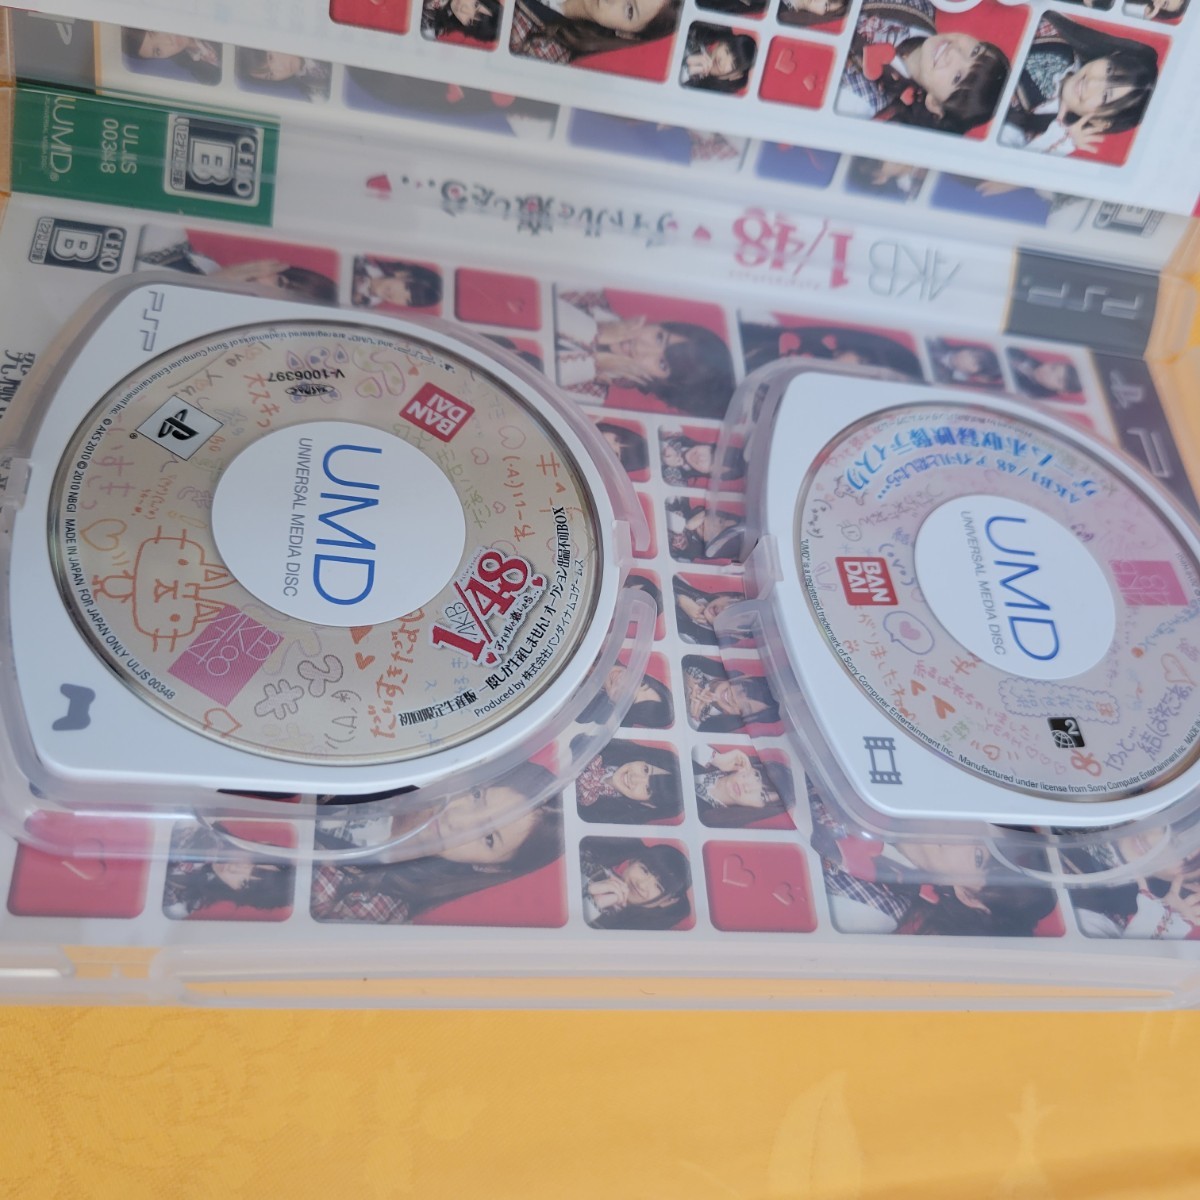 PSP ソフト AKB48 3点セット プレイステーションポータブル  AKB 48 初回限定品 総選挙 